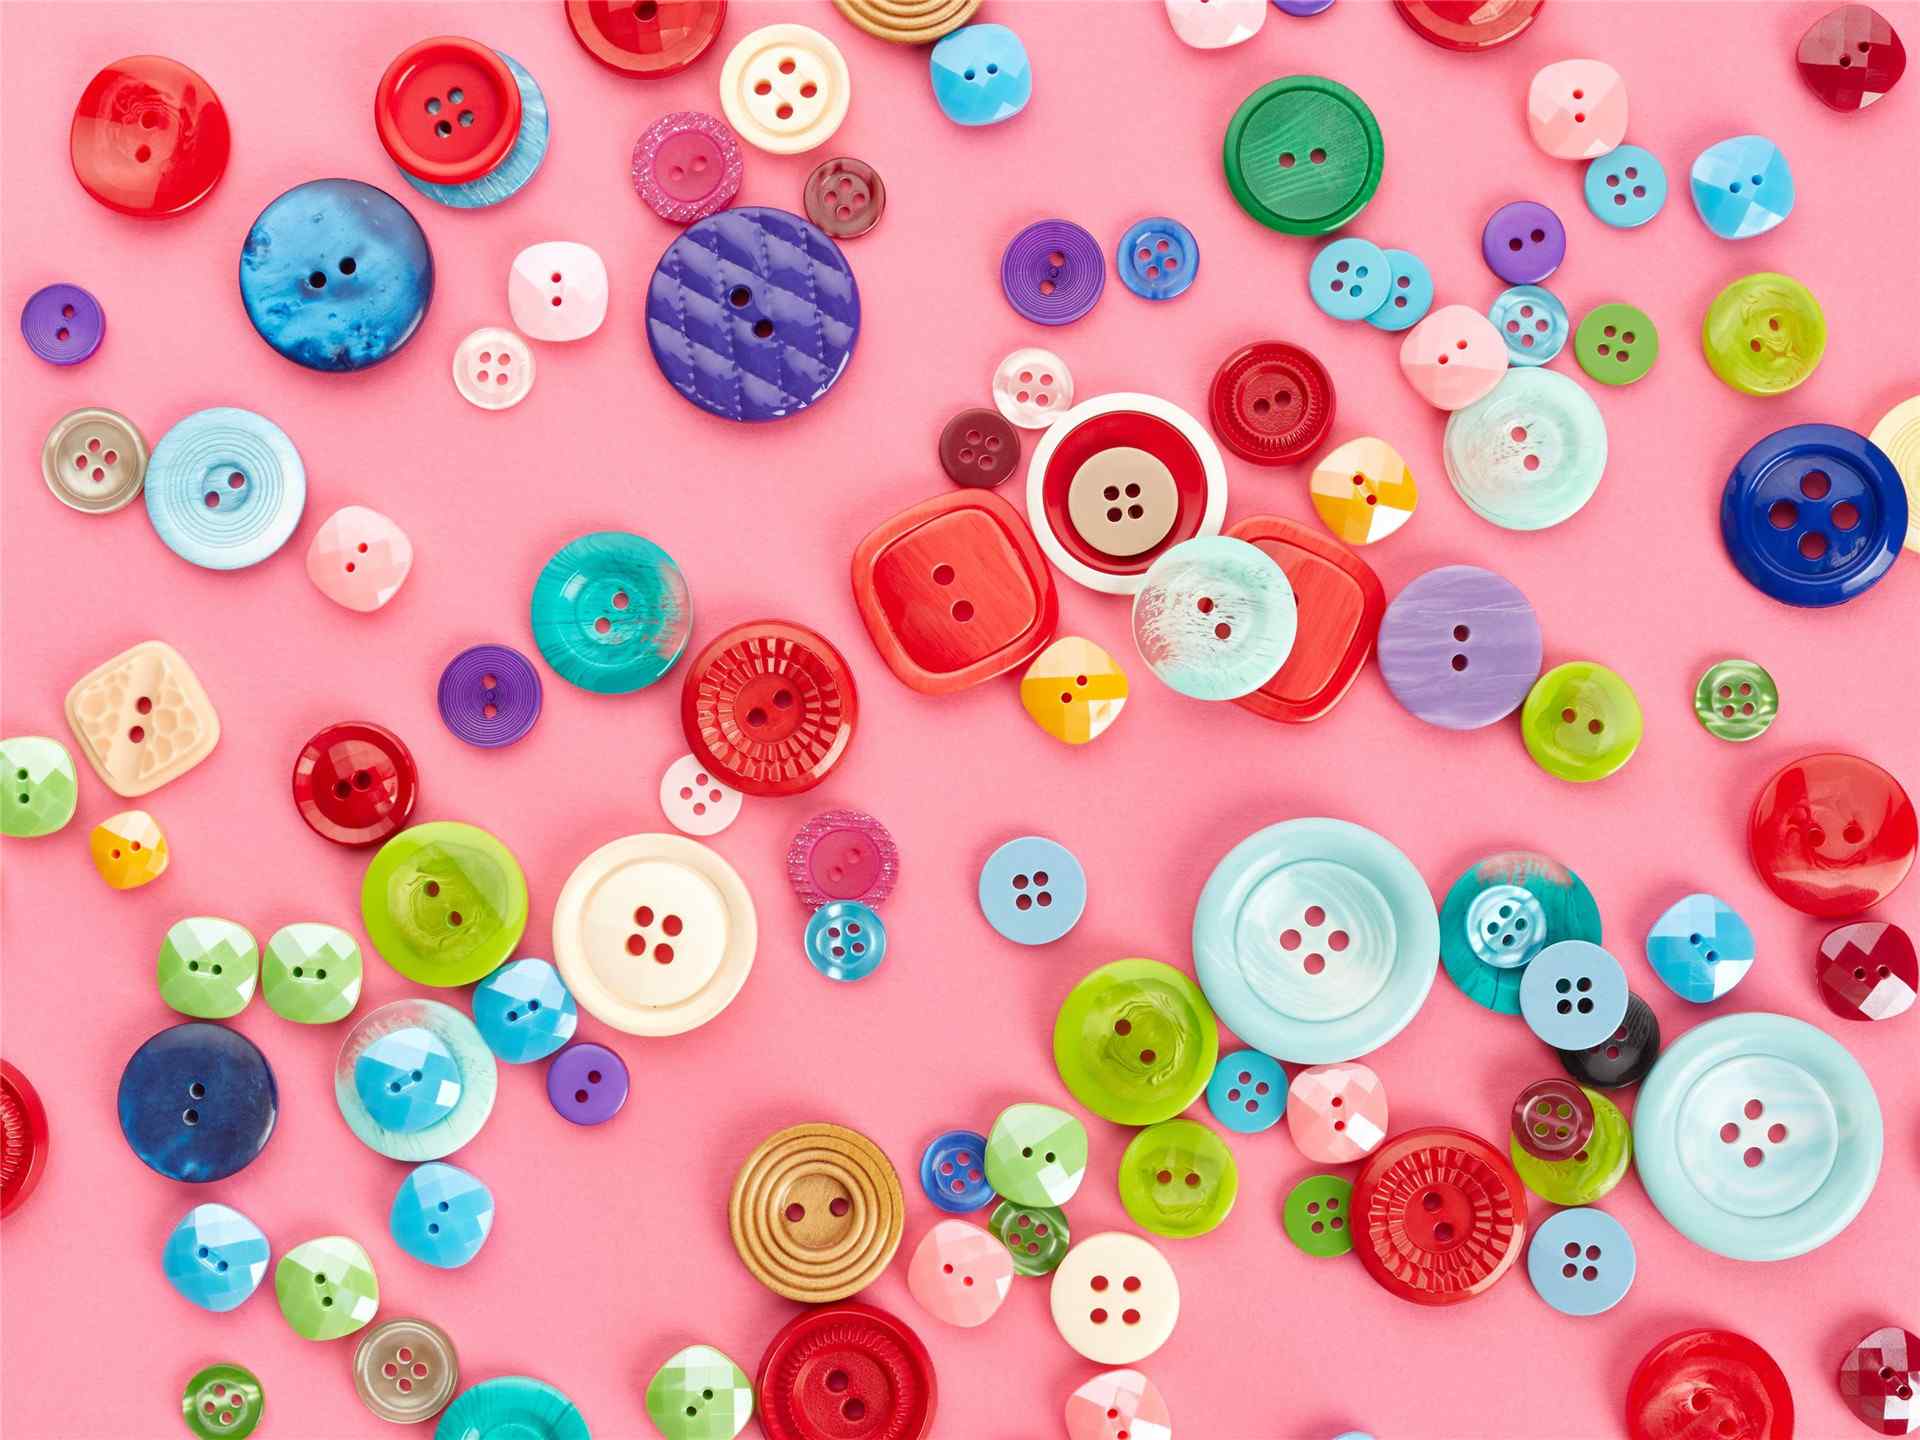 手工达人的纽扣创意DIY作品 - 堆糖，美图壁纸兴趣社区